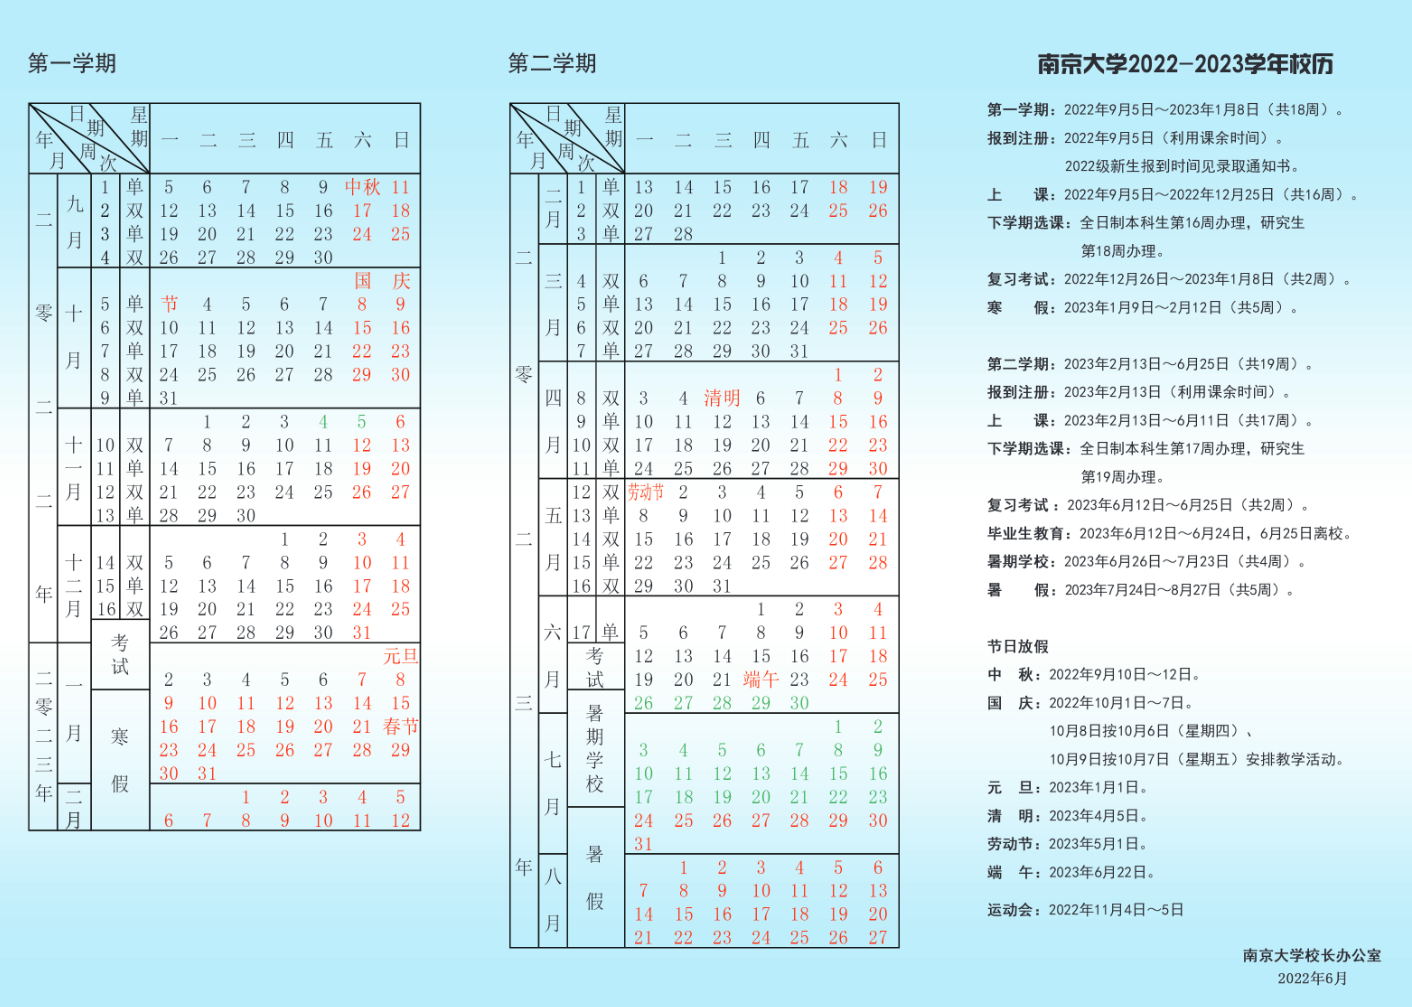 2023南京大学寒假开始和结束时间 什么时候放寒假